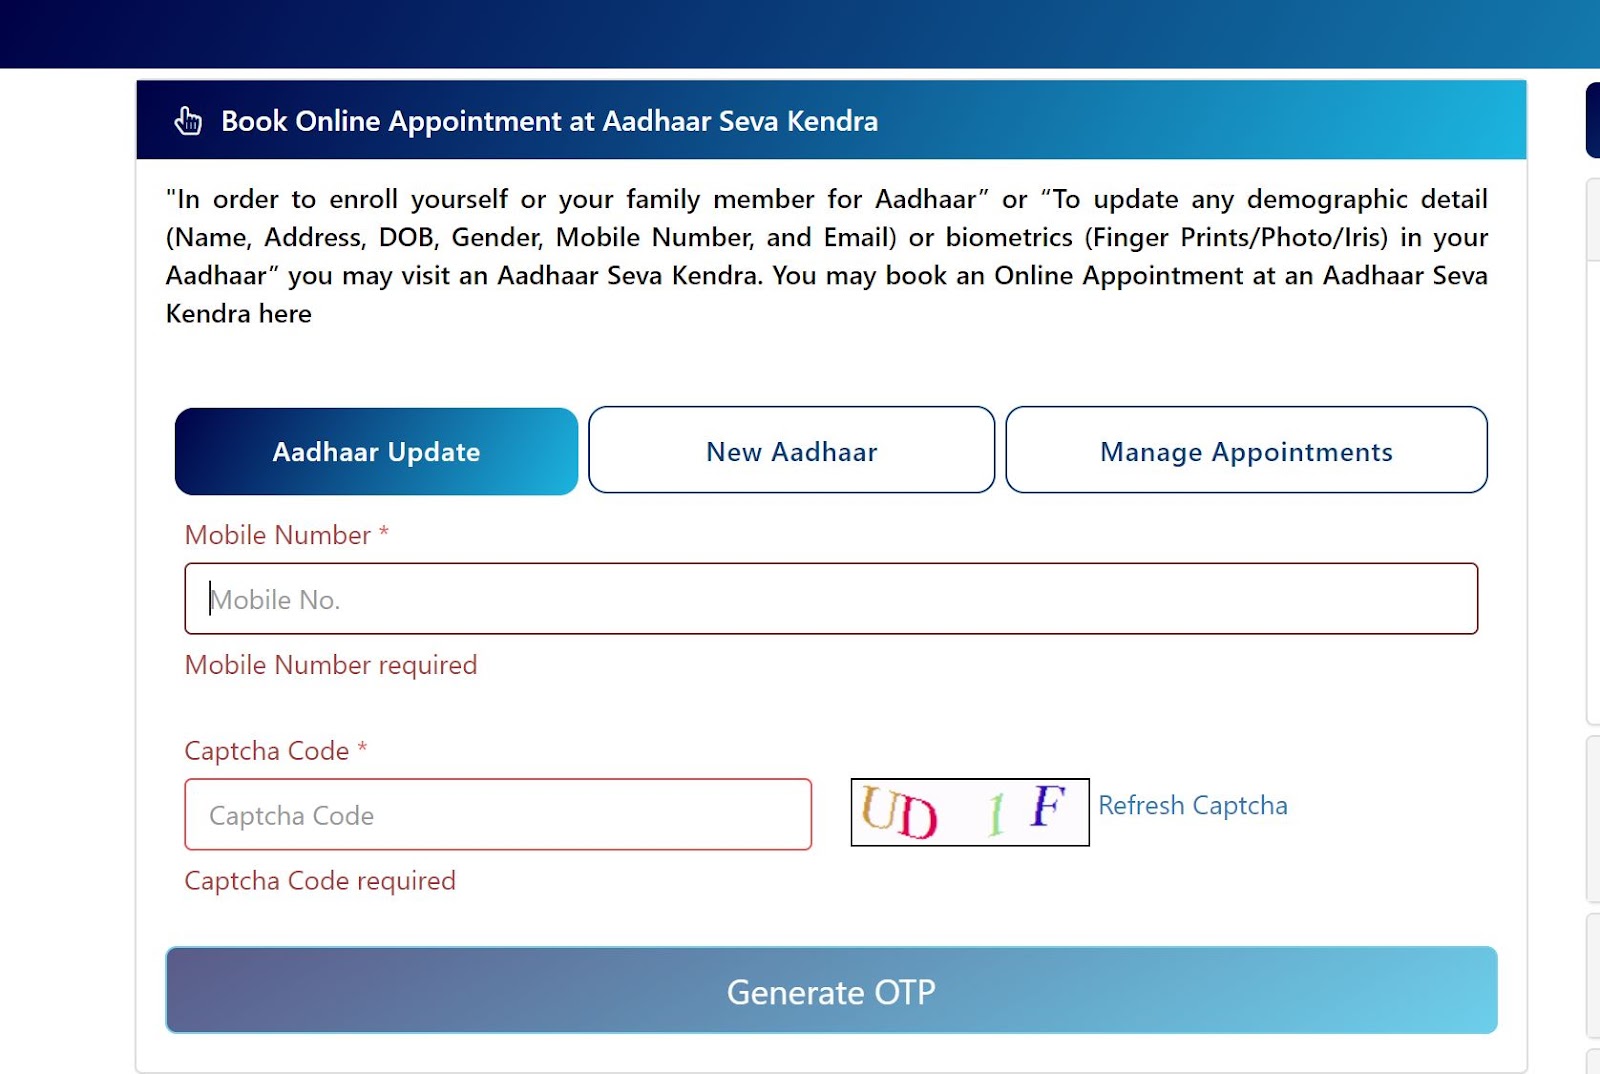 Select New Aadhaar and Generate OTP